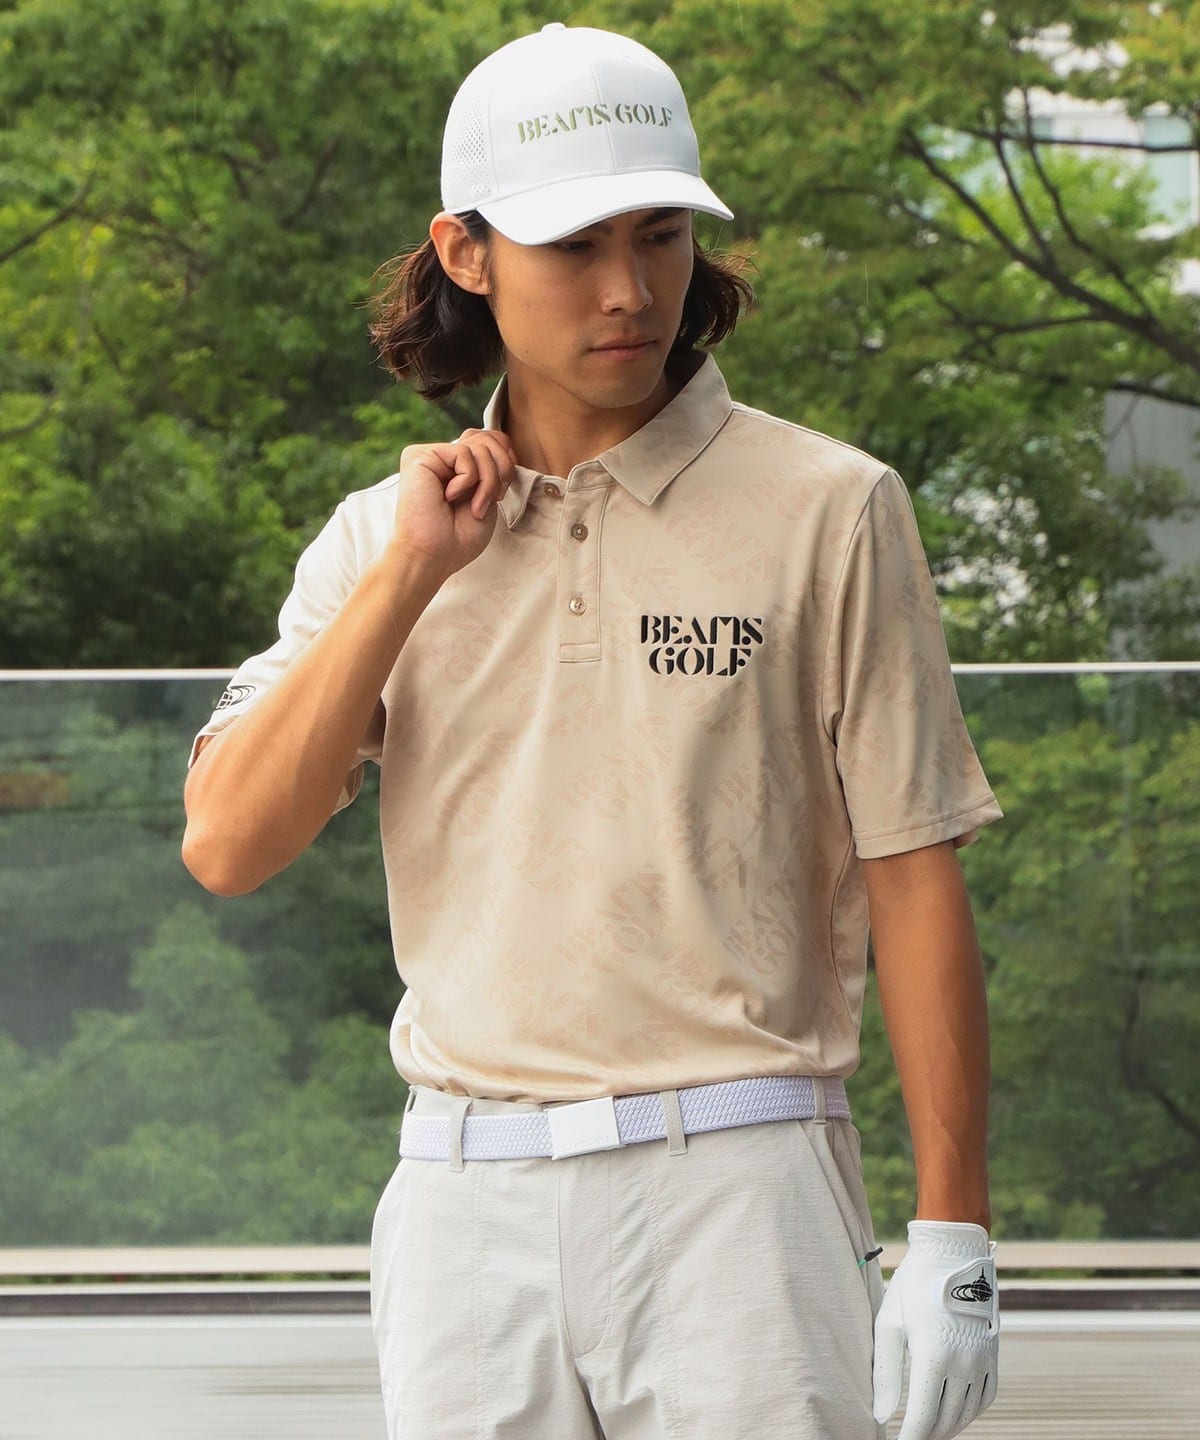 購入価格は17000円ほどBEAMS golf メンズゴルフウェアポロシャツXL